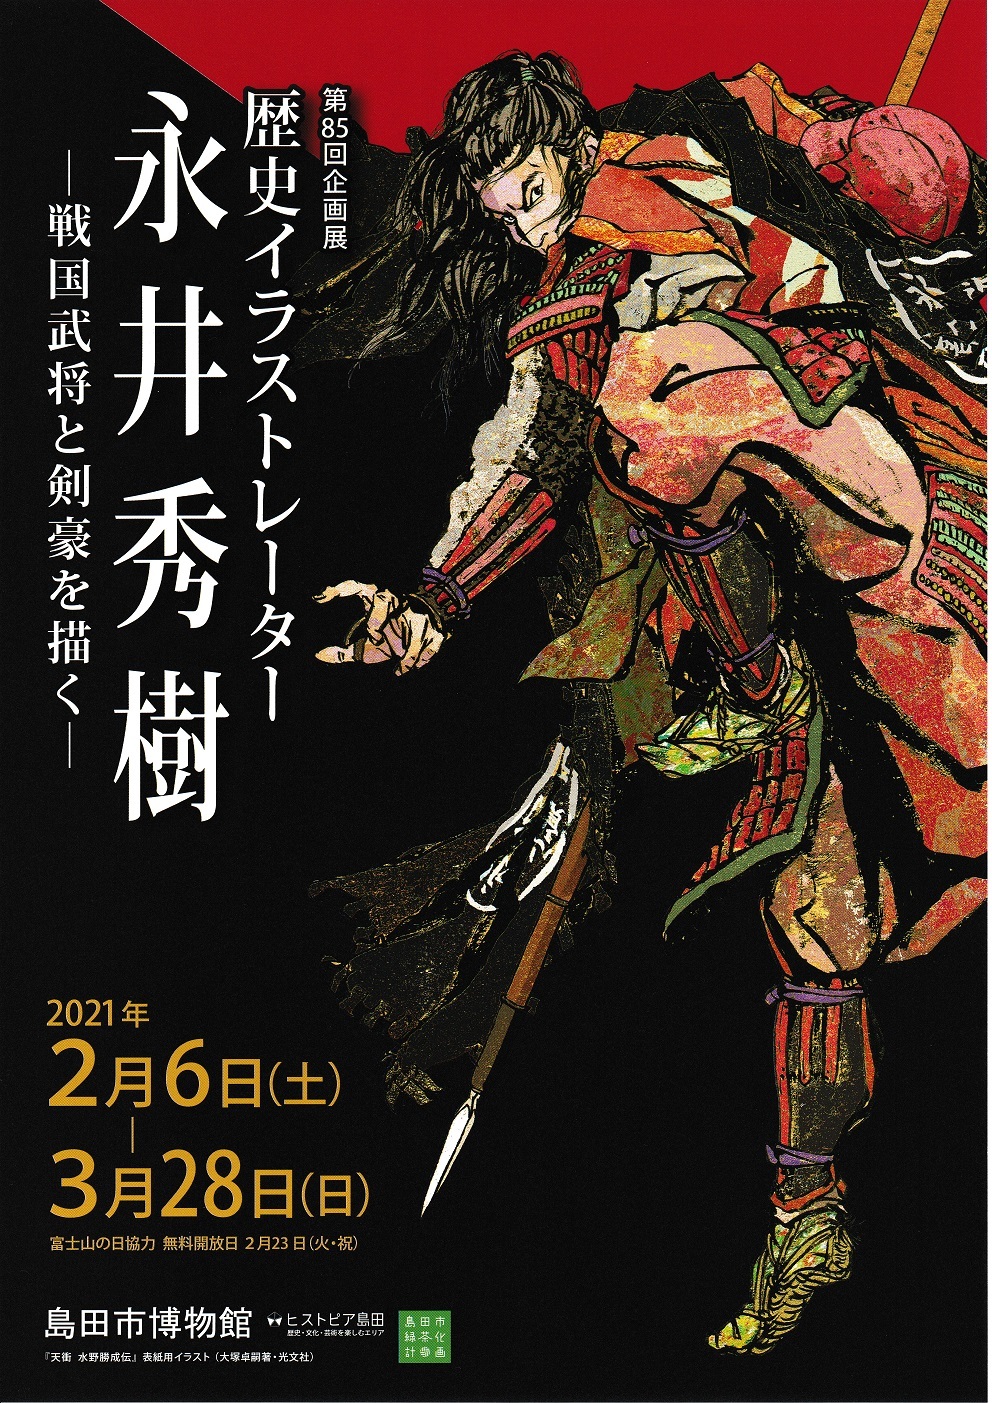 しまはく企画展「歴史イラストレーター 永井秀樹ー戦国武将と剣豪を描くー」